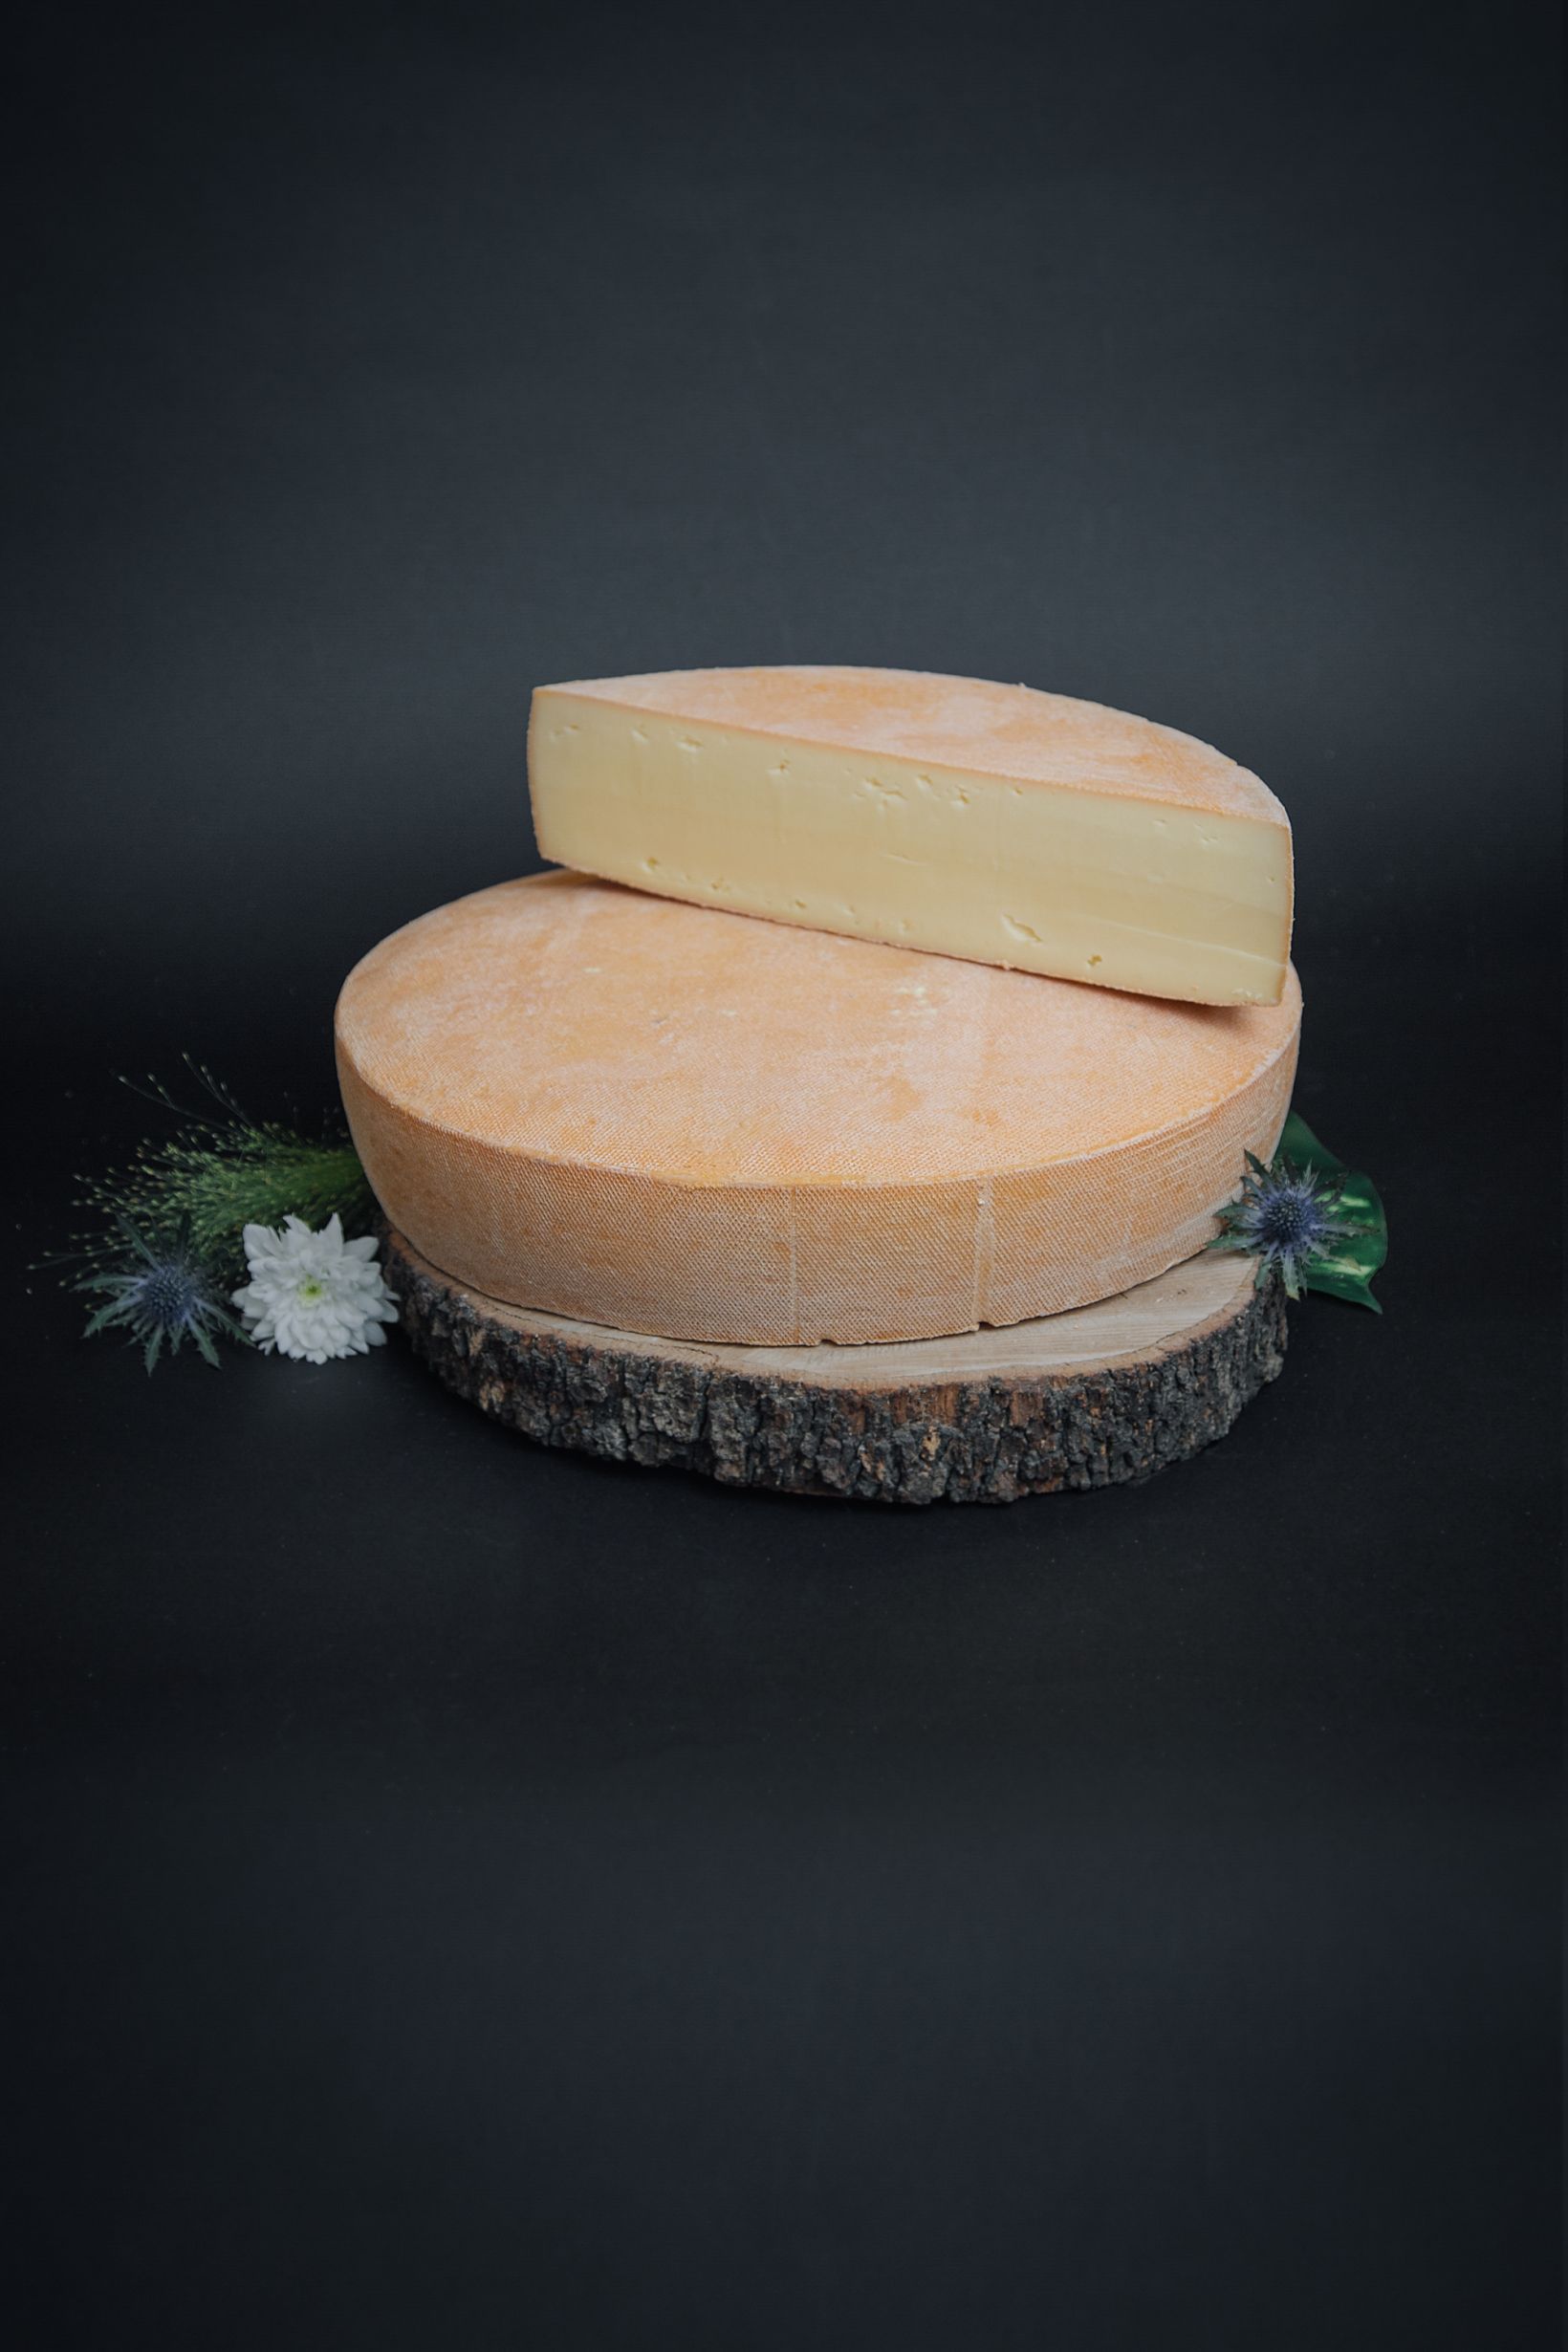 https://www.la-belle-en-cuisse.com/155-large_2x/fromage-a-raclette-nature.jpg